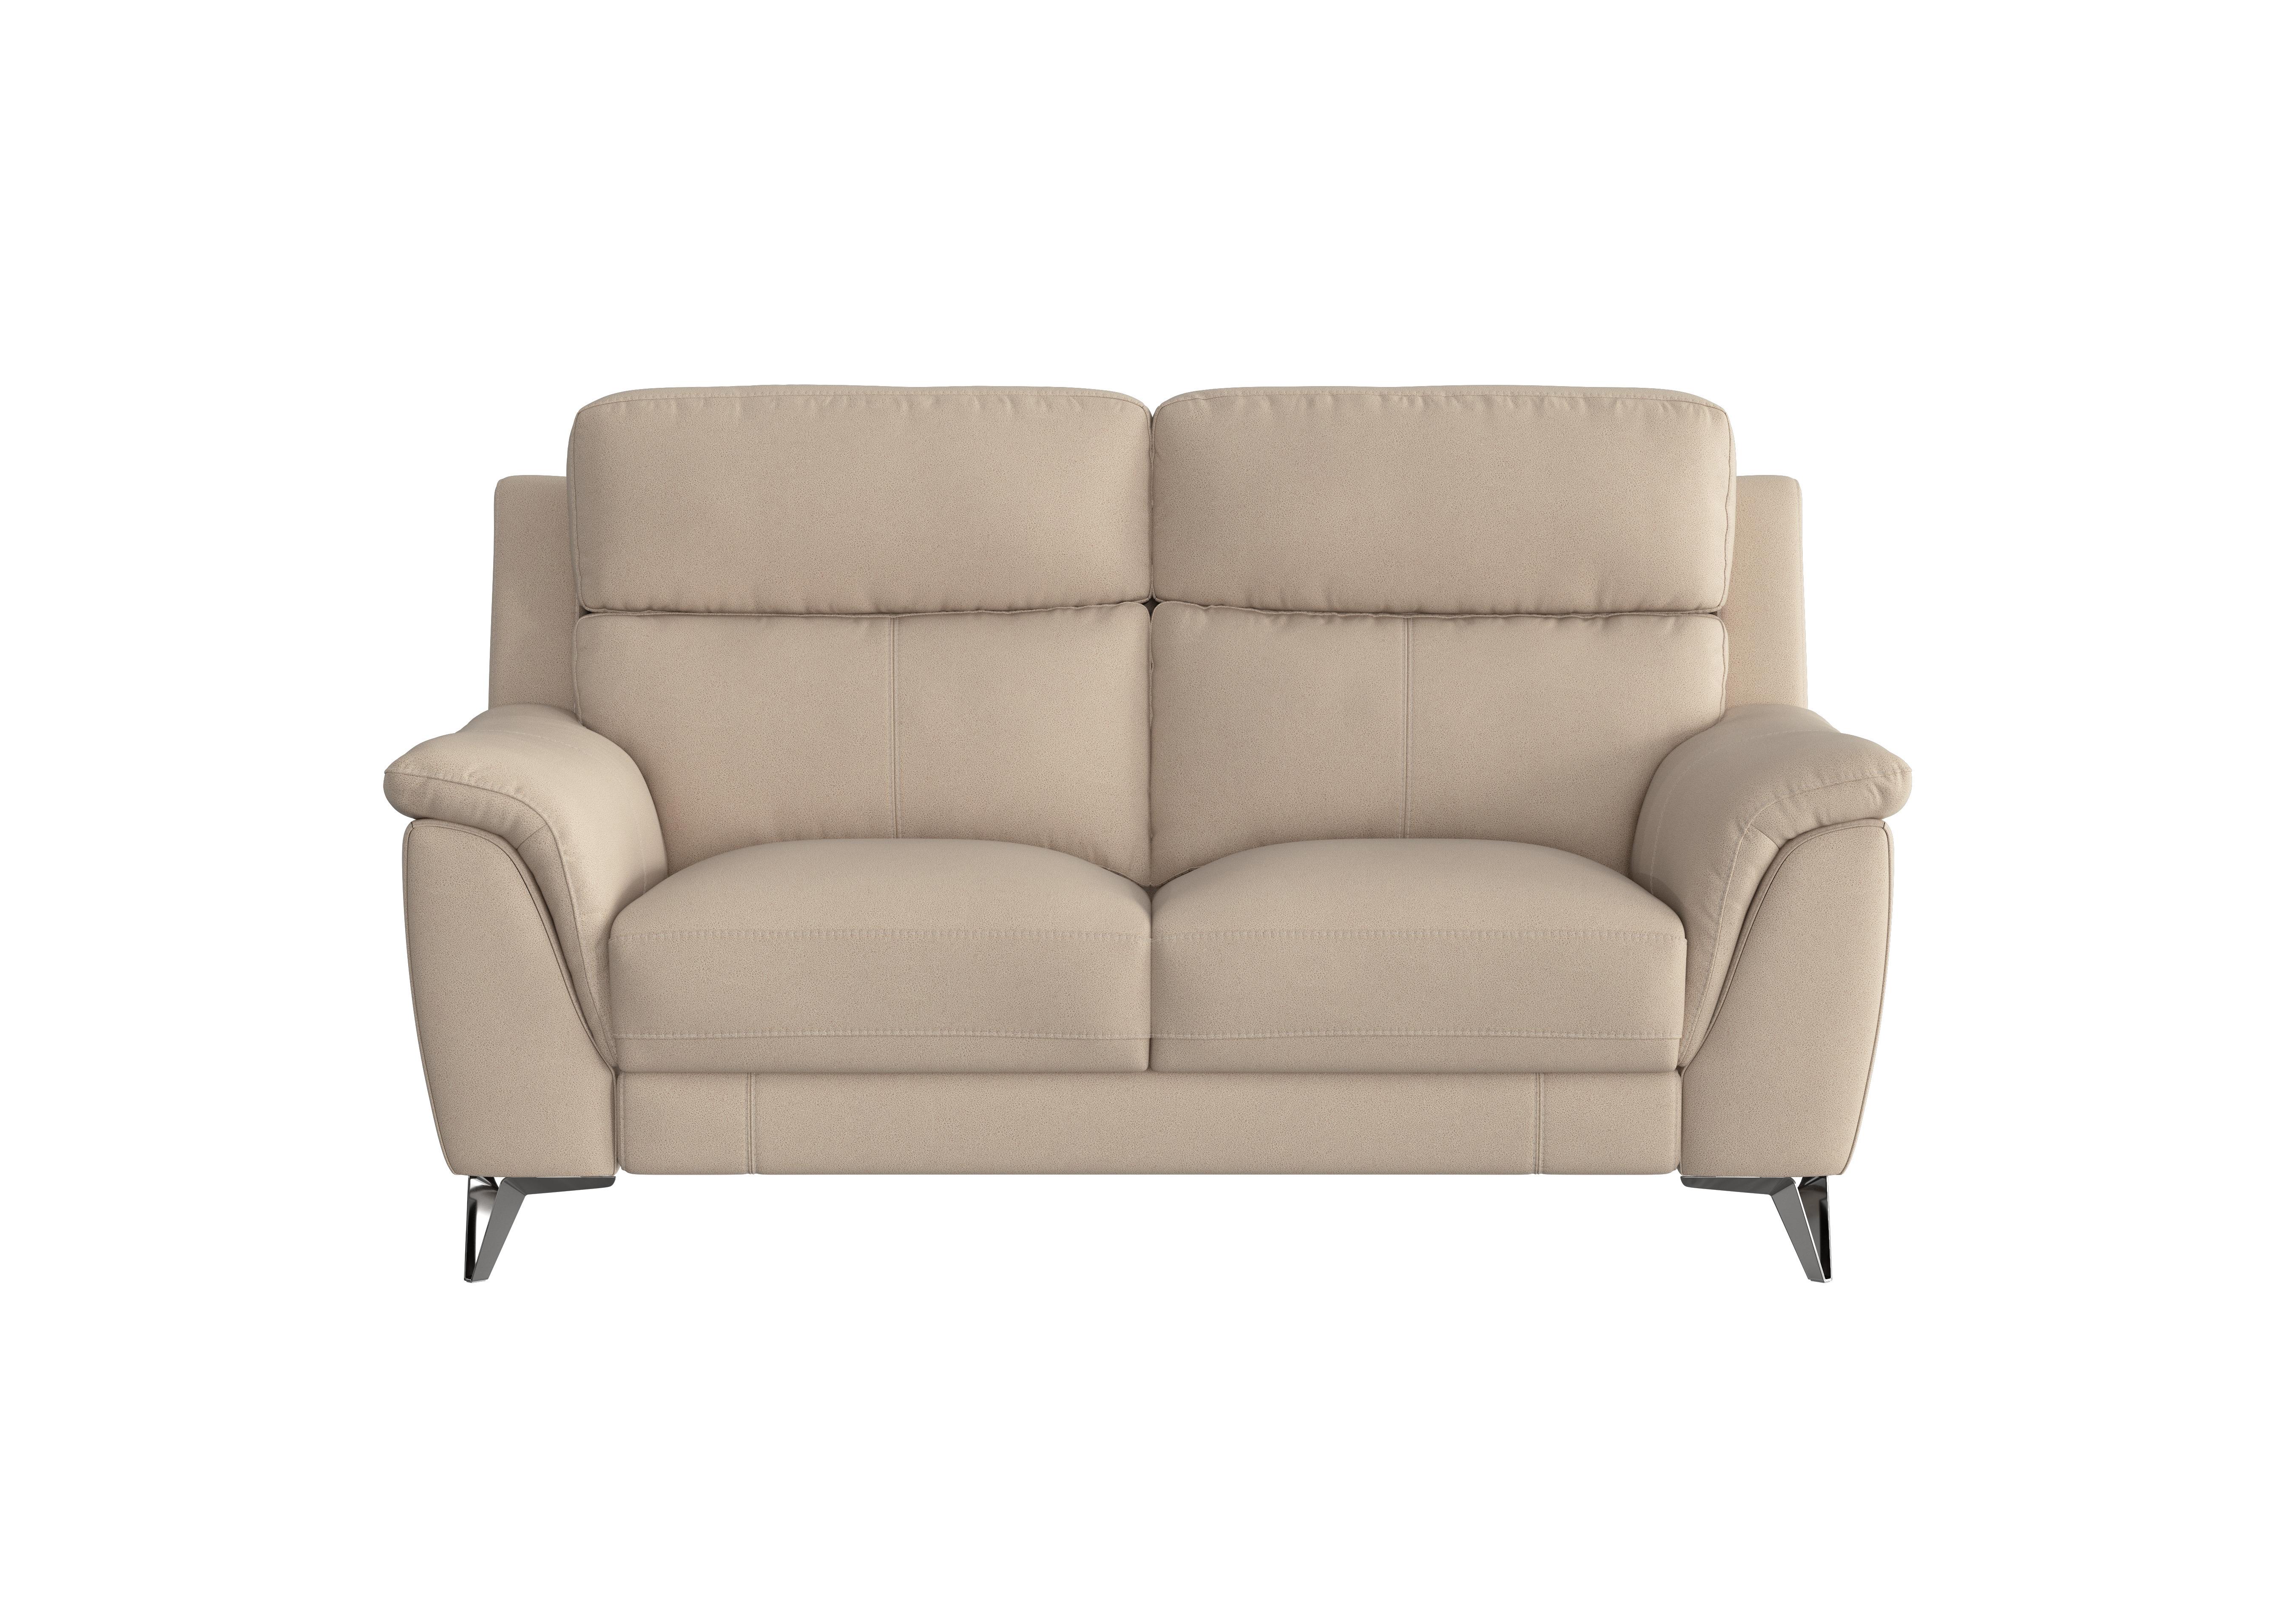 Contempo 2 Seater Fabric Sofa in Bfa-Blj-R20 Bisque on Furniture Village